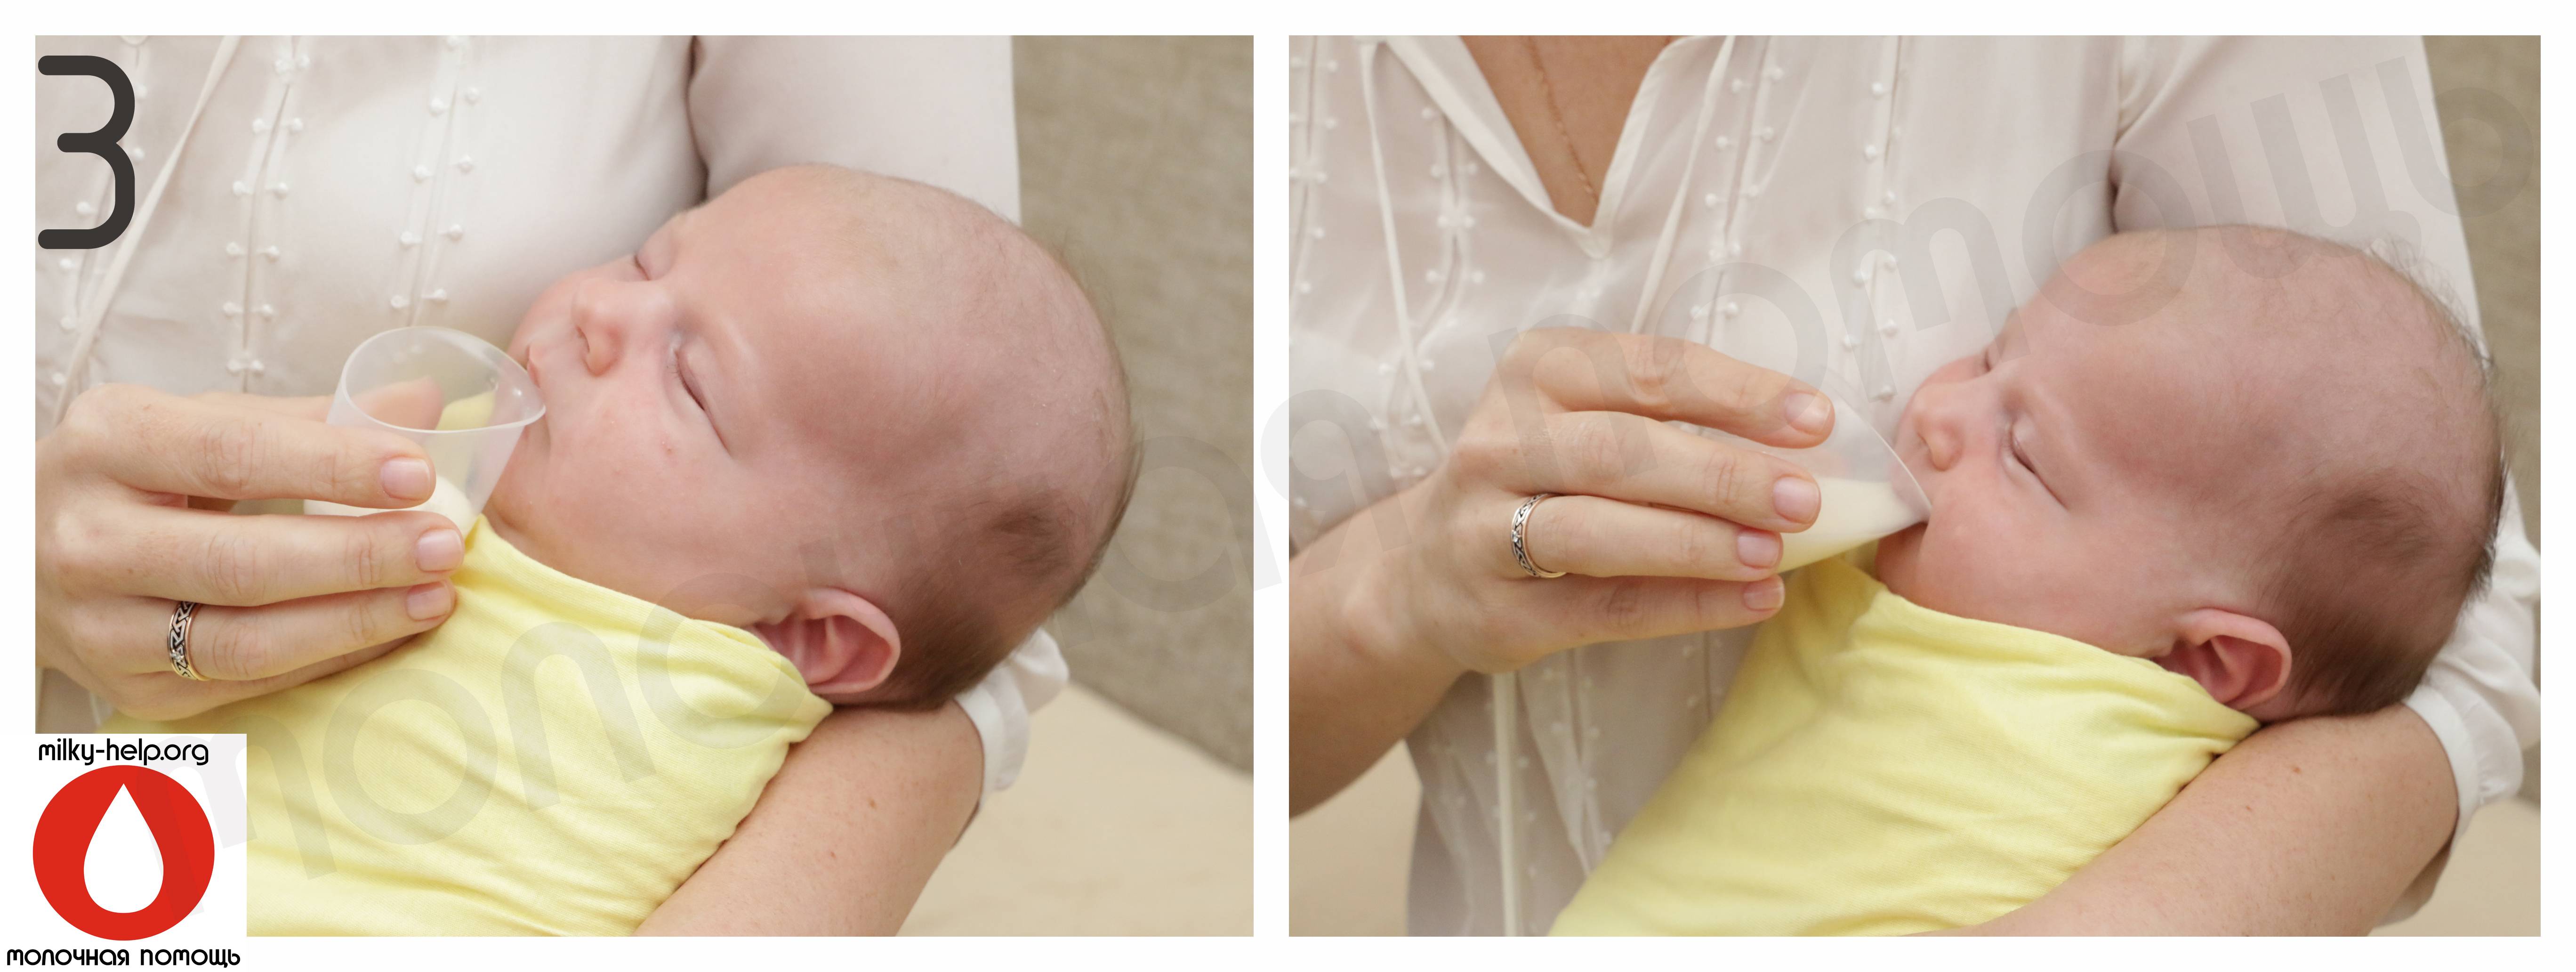 Ребенок срыгивает молоко после кормления новорожденный. Чашечки для докорма ребенка. Докорм новорожденного из чашки. Чашка для докорма малыша. Докорм для новорожденных при грудном вскармливании.